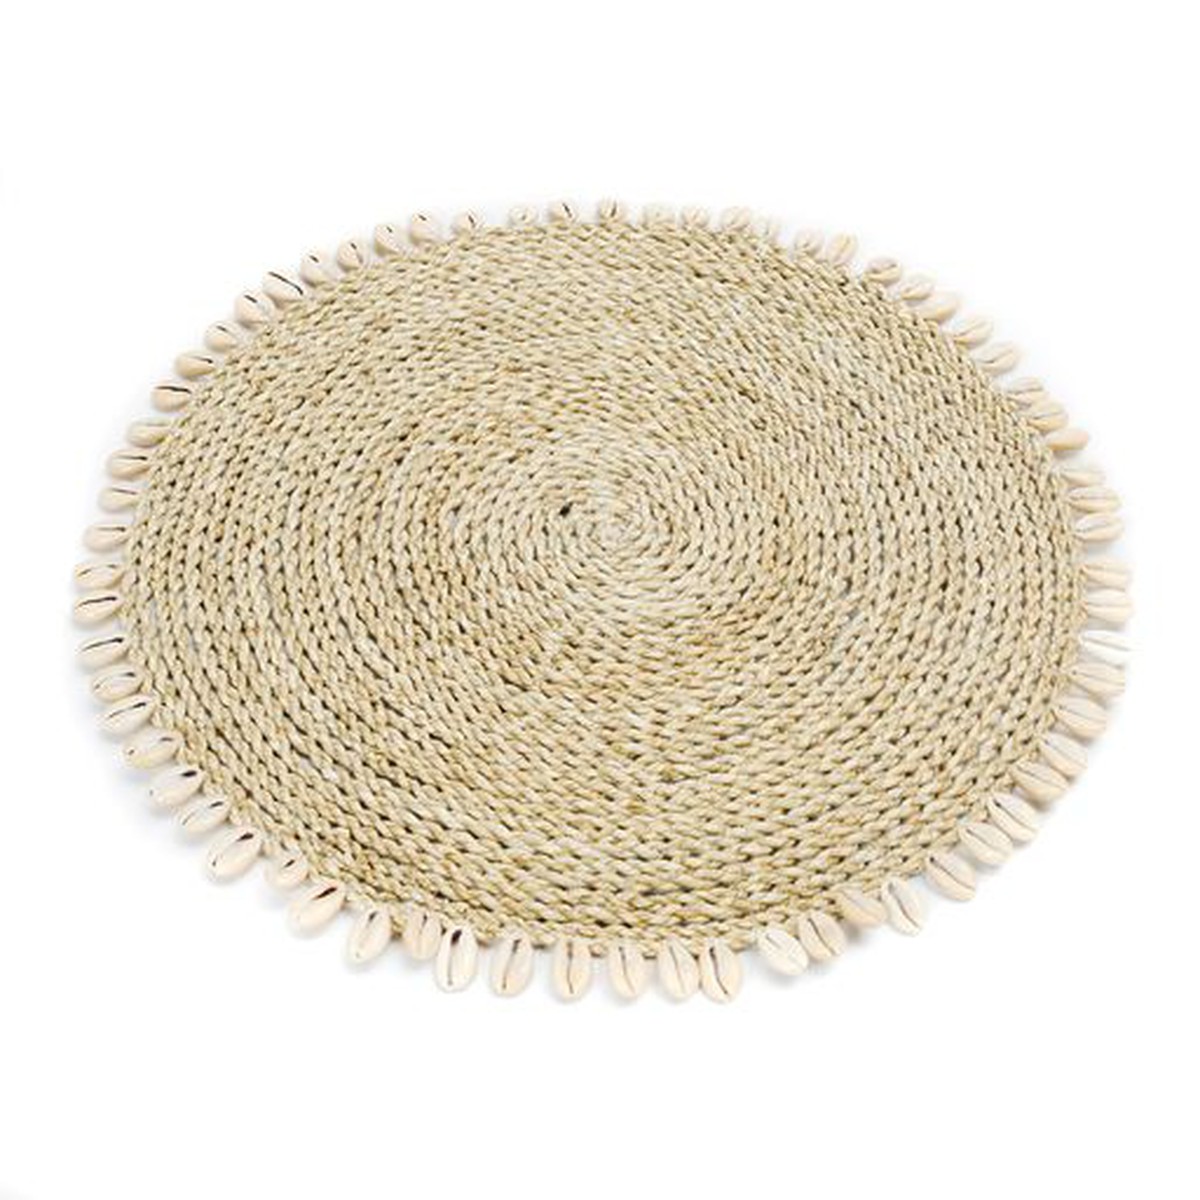 Bazar Bizar Ethnique Set de table Seagrass Shell naturel  38cm